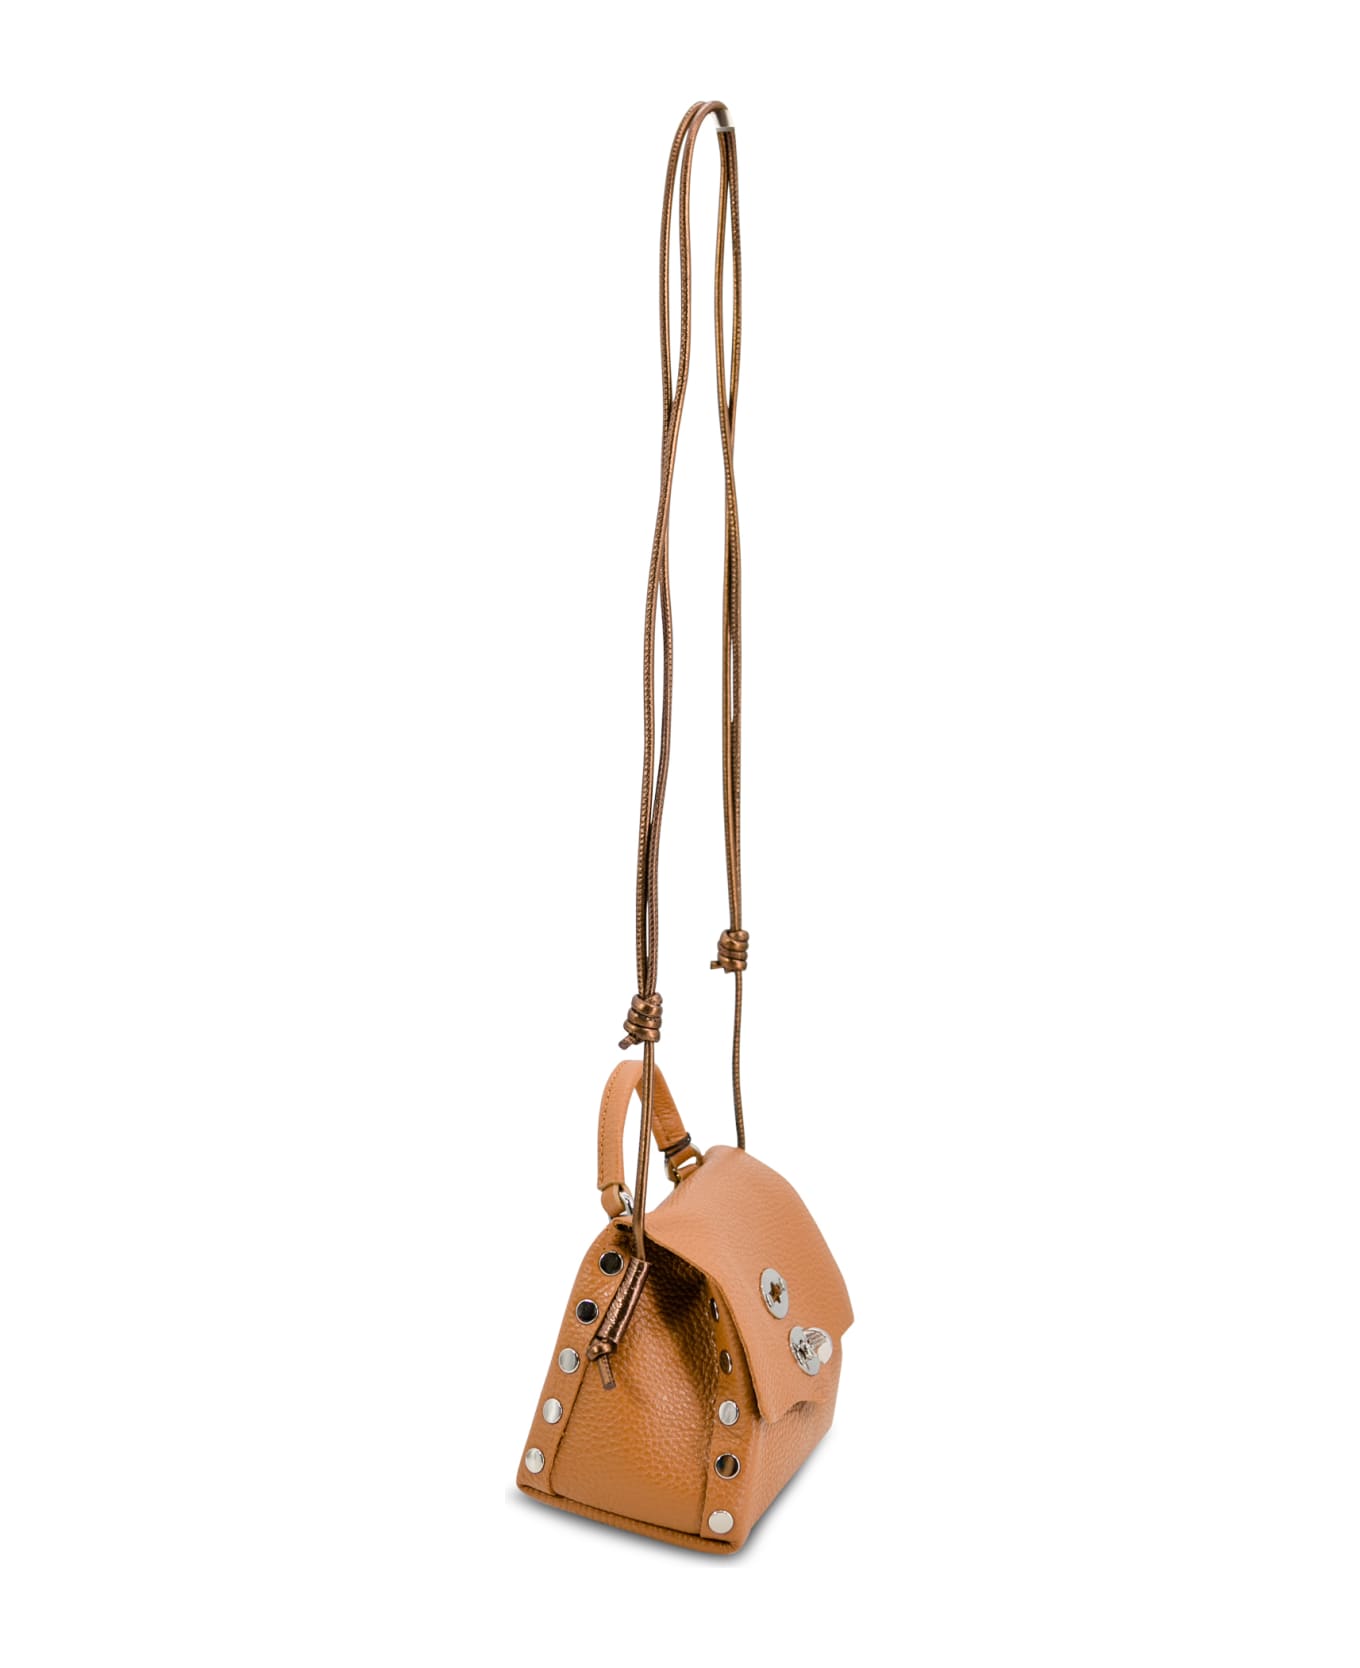 Zanellato Postina® Leather Mini Bag - Leather Brown